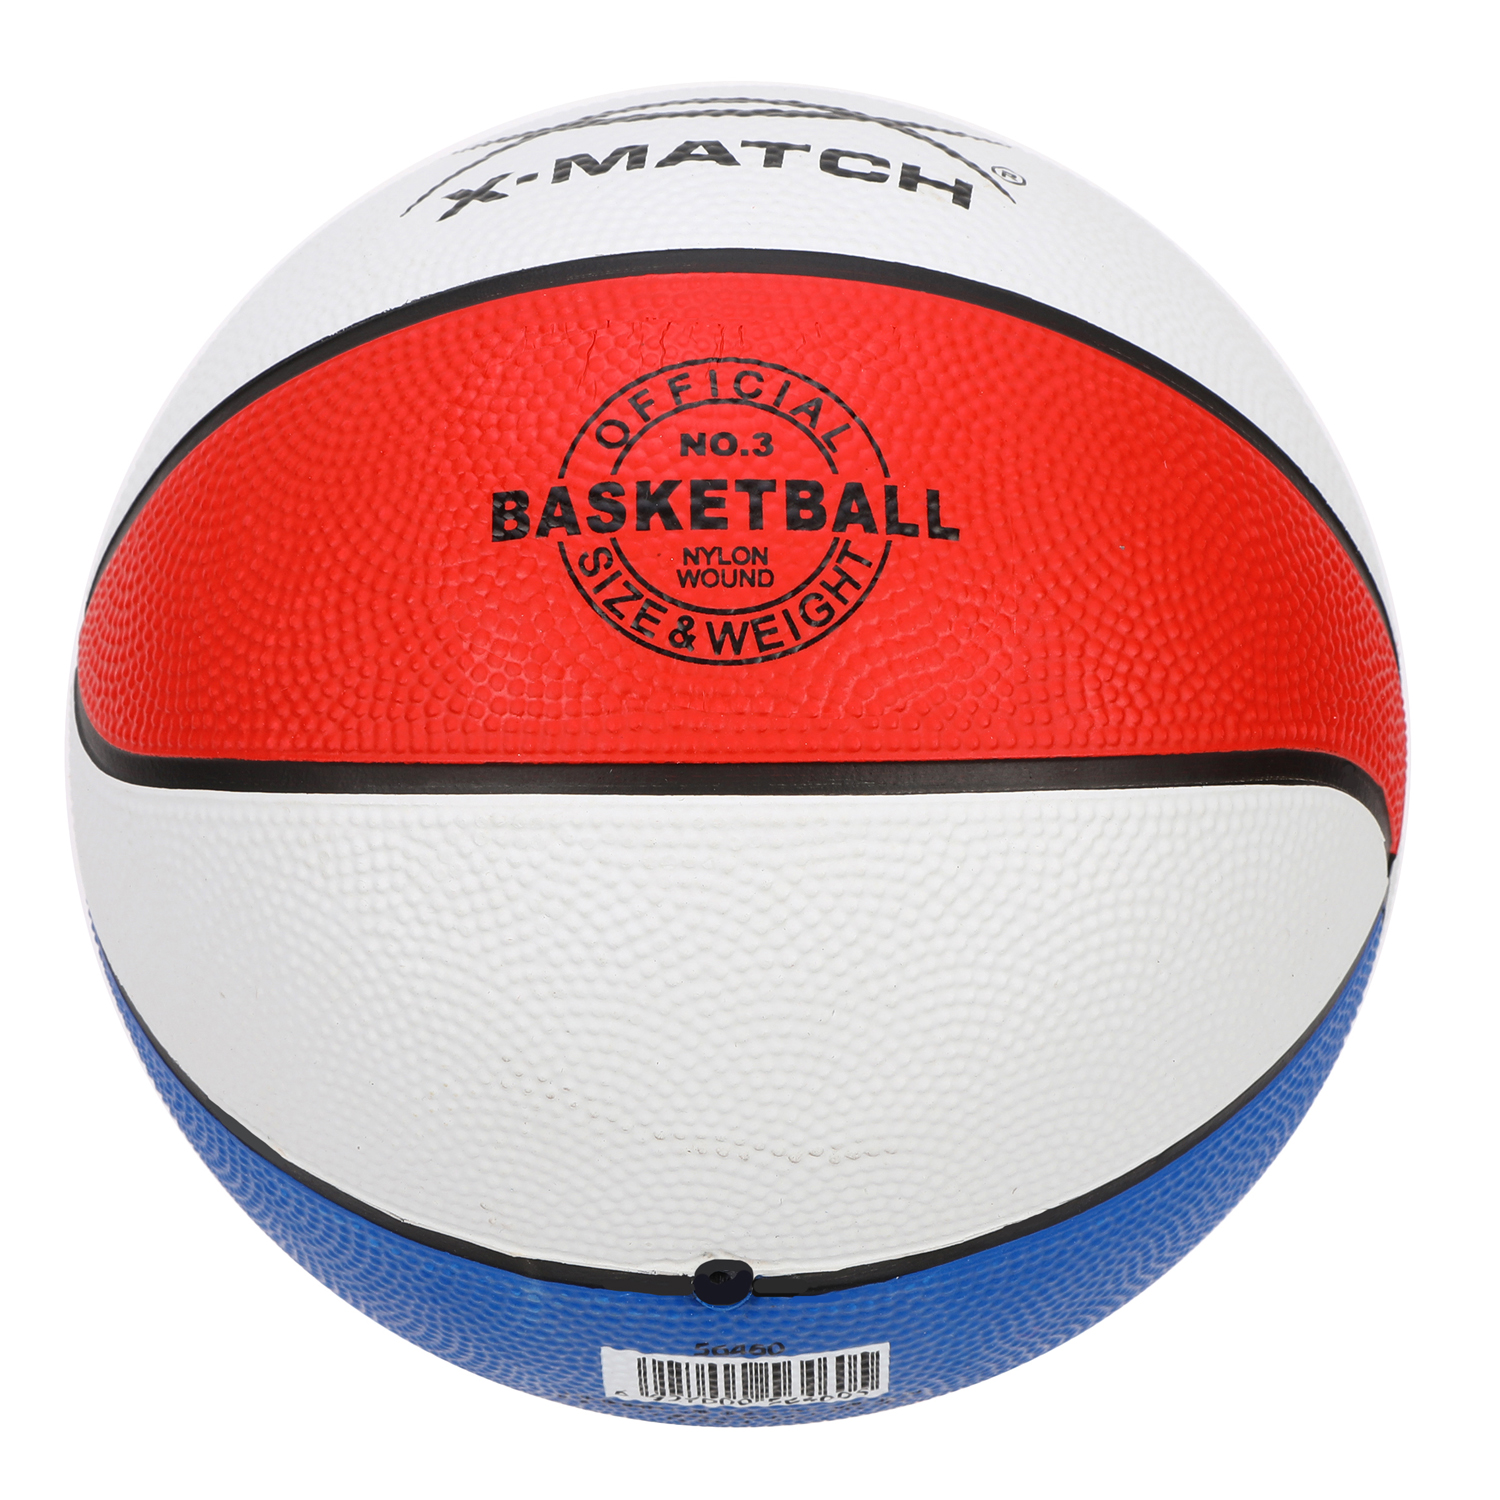 Мяч X-Match баскетбольный размер 3 - фото 2